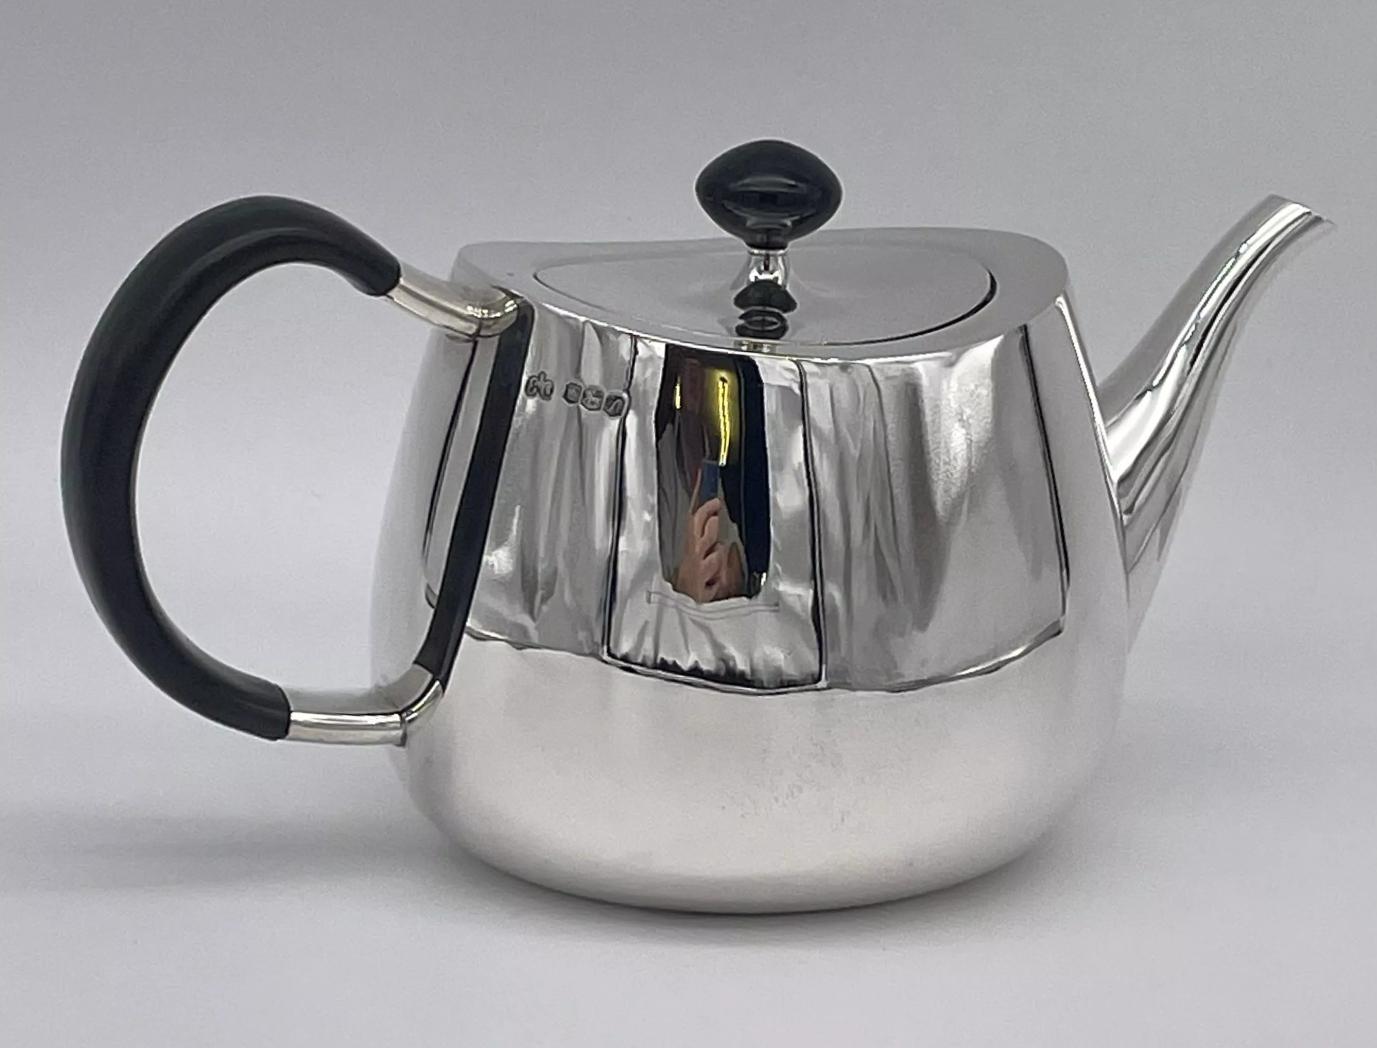 Ein vierteiliges modernistisches Tee- und Kaffeeservice aus Sterlingsilber von Elizabeth II, Sheffield 1962/68/69, Marke Elkington, entworfen von David Mellor.

Stolzes Muster in schlichter, eckiger Form, bestehend aus einer Teekanne, einer